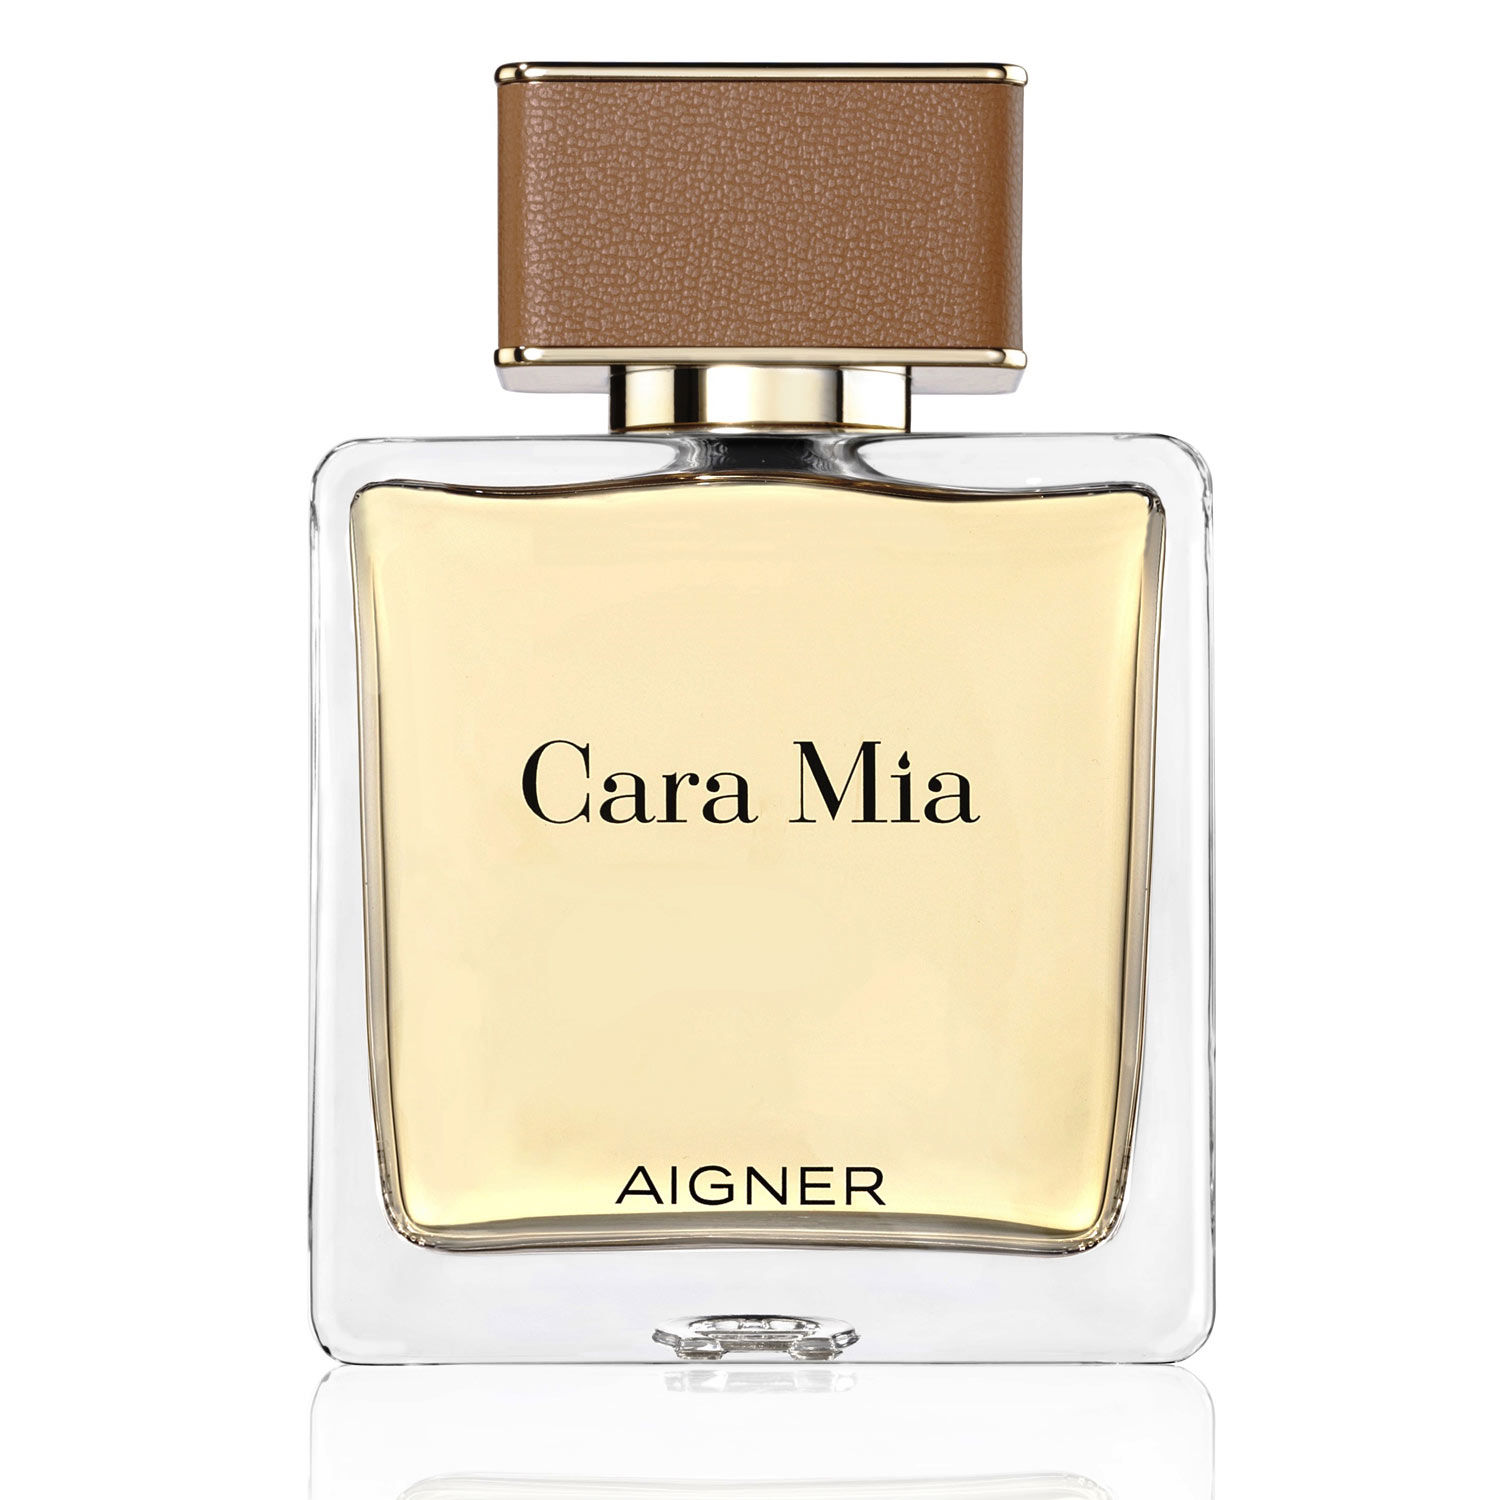 Buy/Send Aigner Cara Mia Eau de Parfum Online- FNP